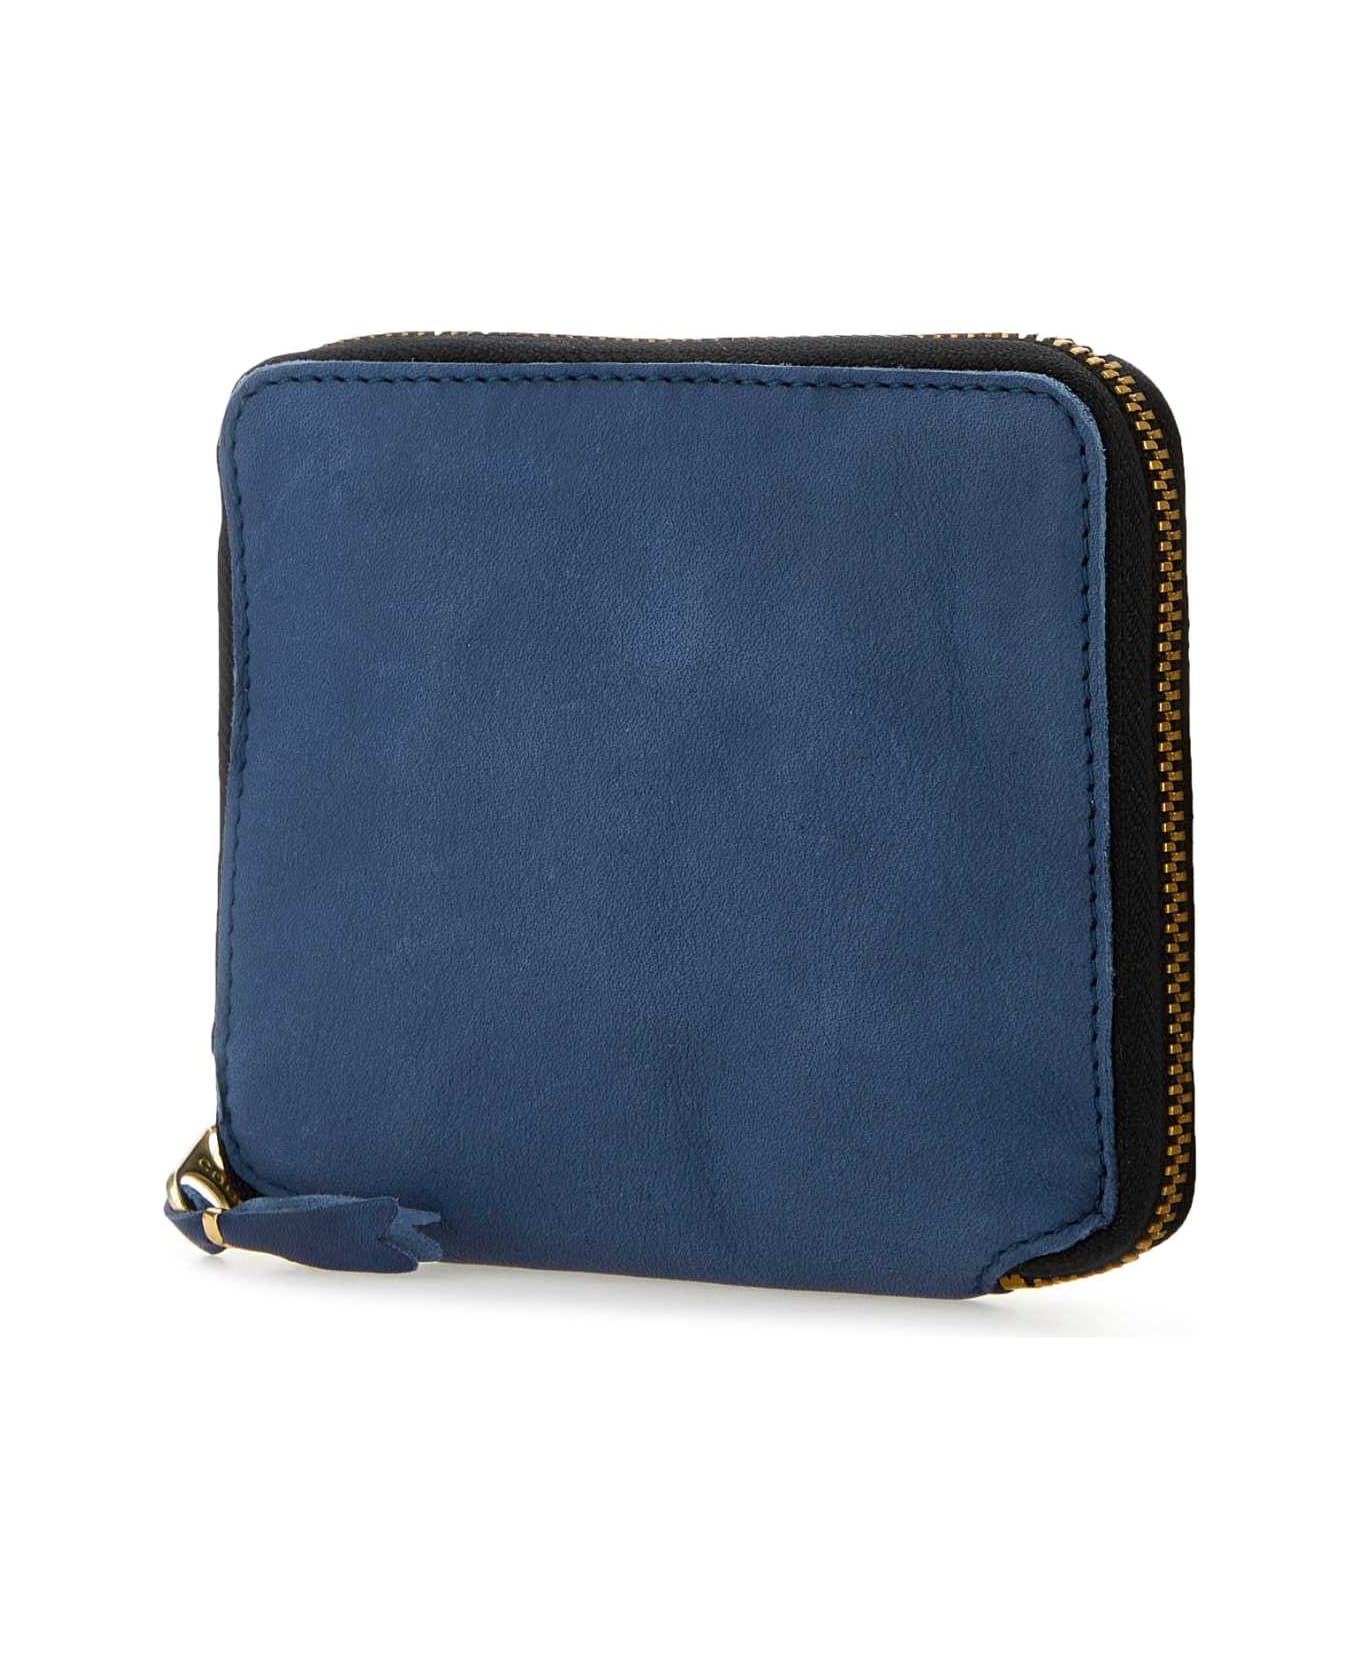 Comme des Garçons Blue Leather Wallet - NAVY